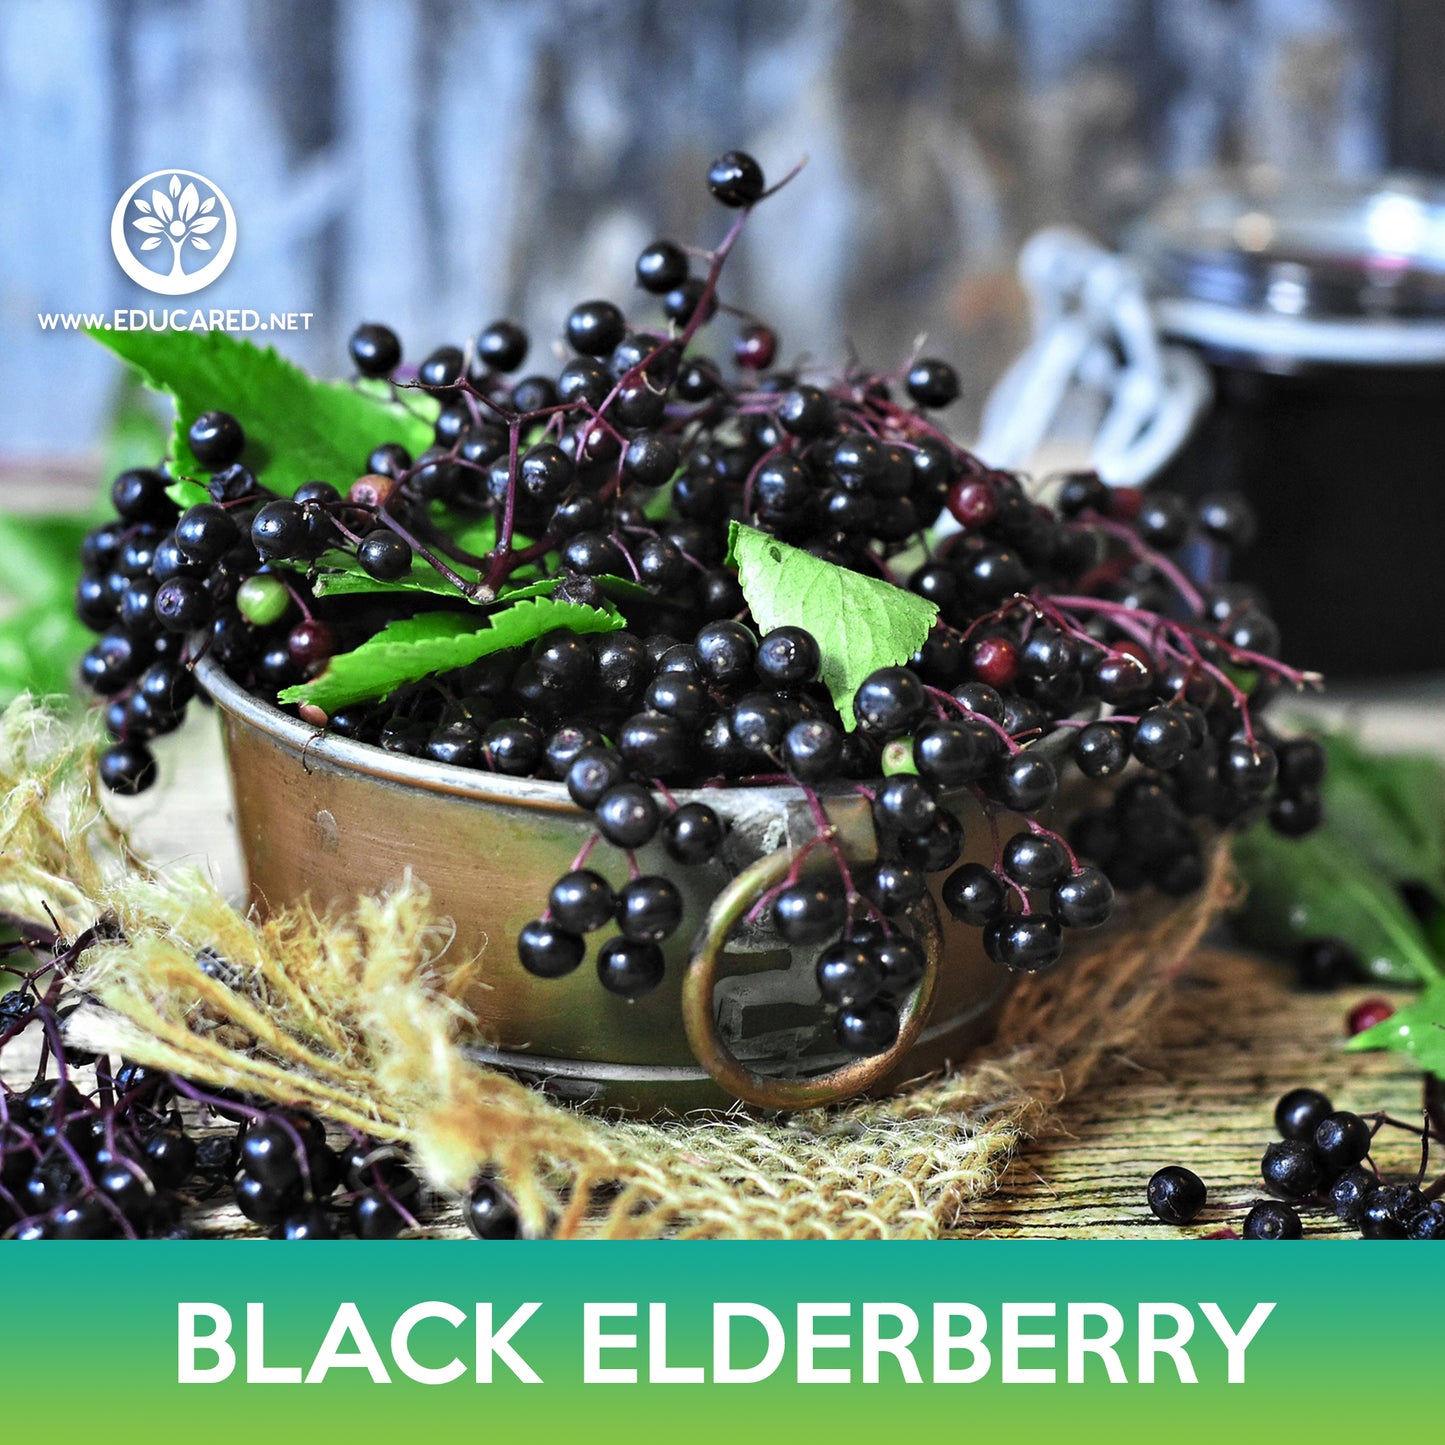 American Black Elderberry Seed